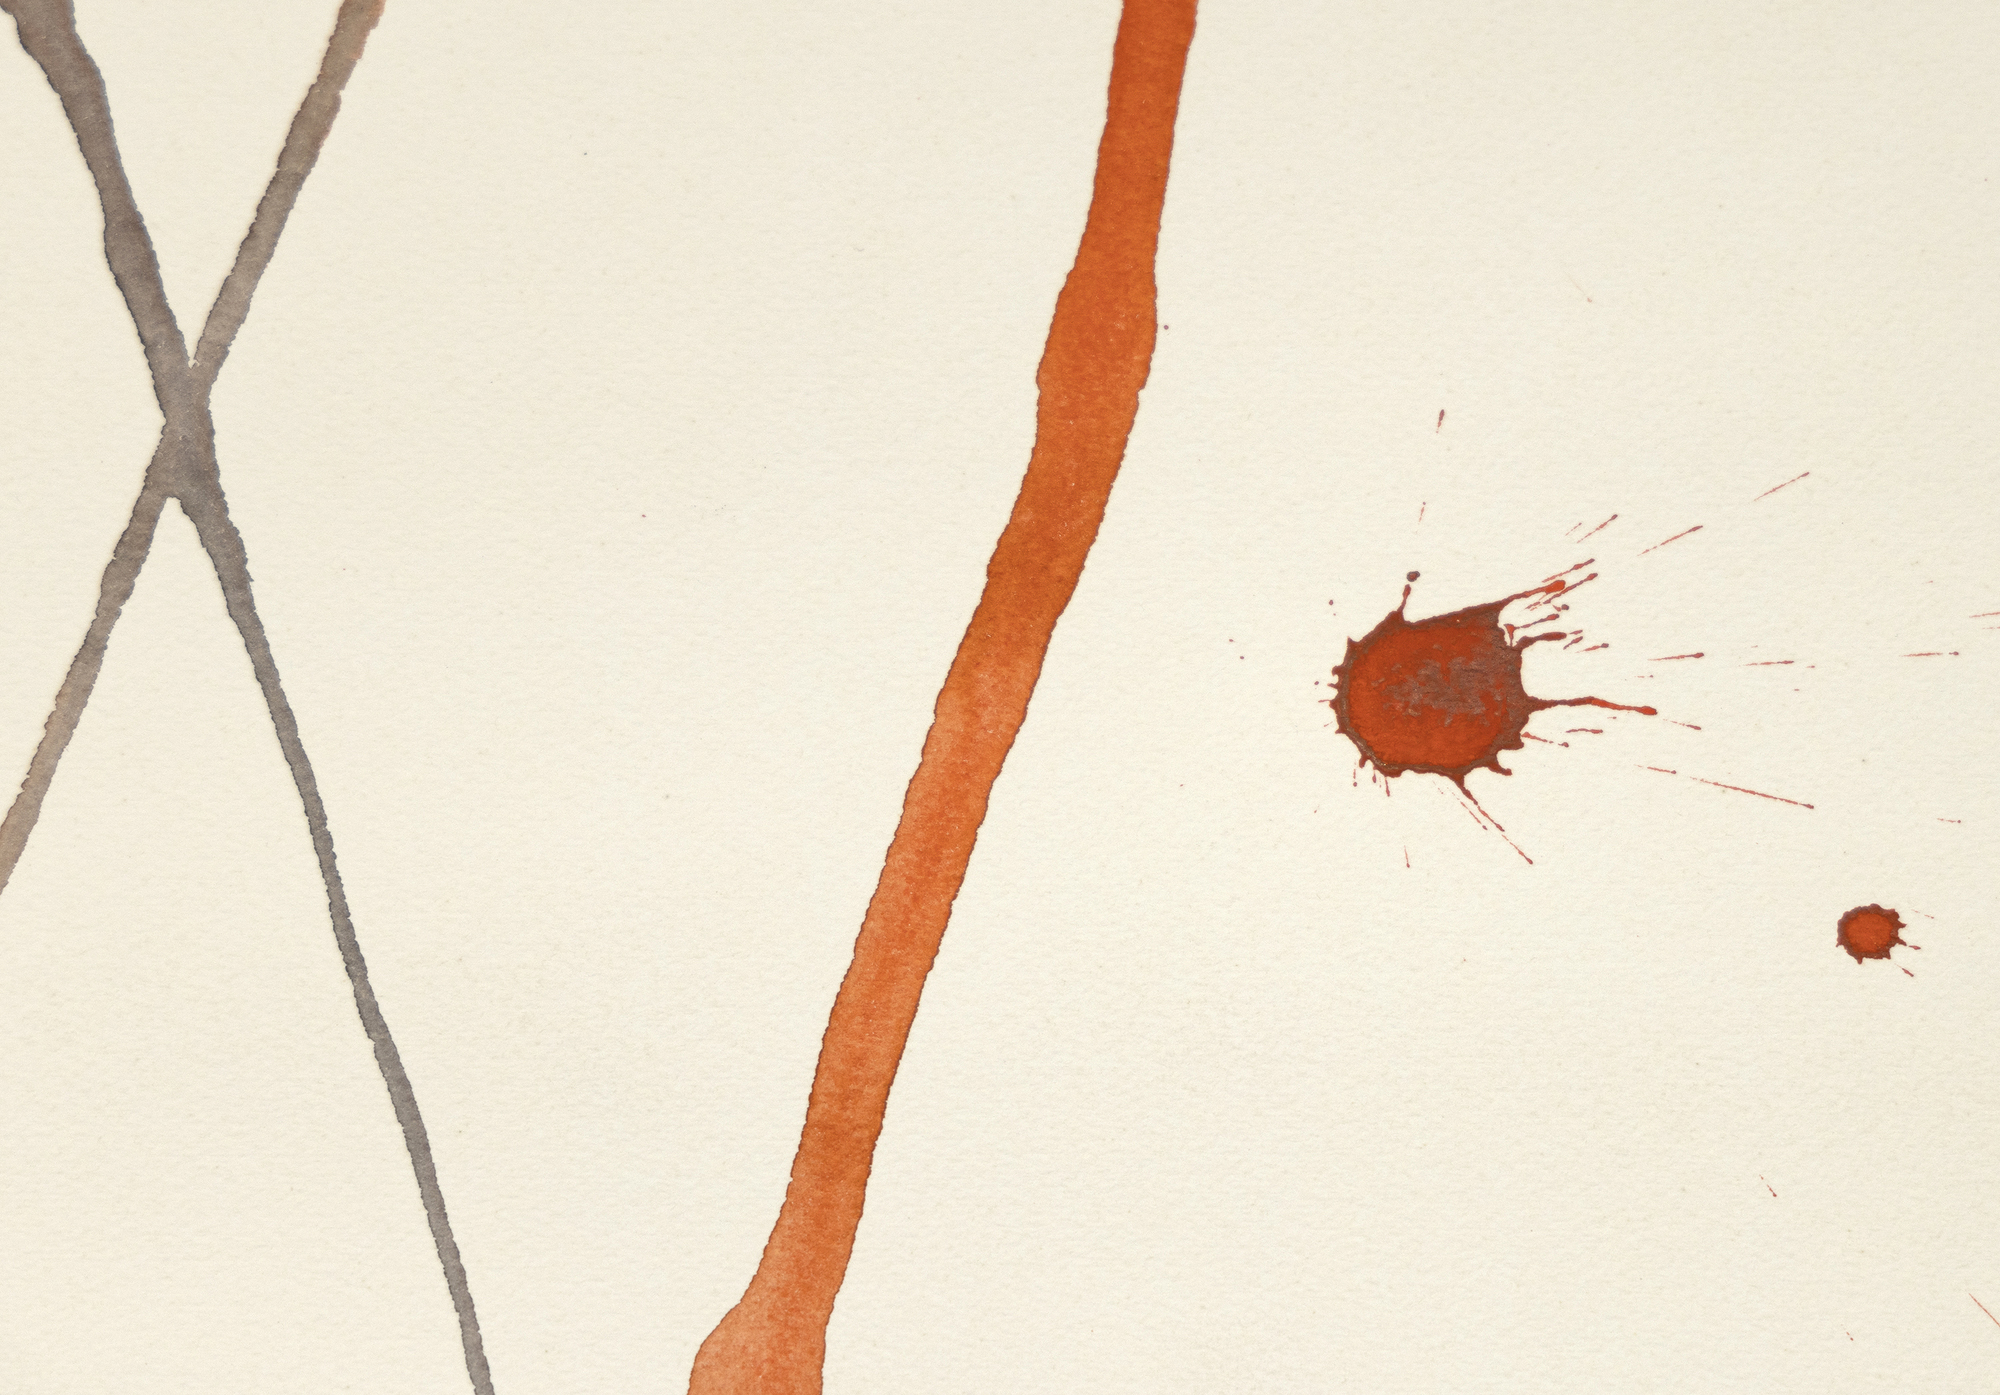 &quot;Wigwam rouge et jaune&quot;, una cautivadora pintura al gouache de Alexander Calder, es una vibrante exploración del diseño y el color. Dominada por un entramado de líneas diagonales que se cruzan cerca de su cúspide, la composición destila un equilibrio dinámico. Calder introduce un elemento de capricho con rombos rojos y amarillos, que infunden a la pieza un carácter lúdico y crean un ambiente festivo. Las bolas rojas en el vértice de las líneas inclinadas a la derecha evocan una impresión caprichosa, mientras que las esferas grises más pequeñas sobre las líneas inclinadas a la izquierda ofrecen contraste y equilibrio. La magistral fusión de simplicidad y elementos de diseño vitales de Calder hace de Wigwam rouge et jaune una delicia visual.